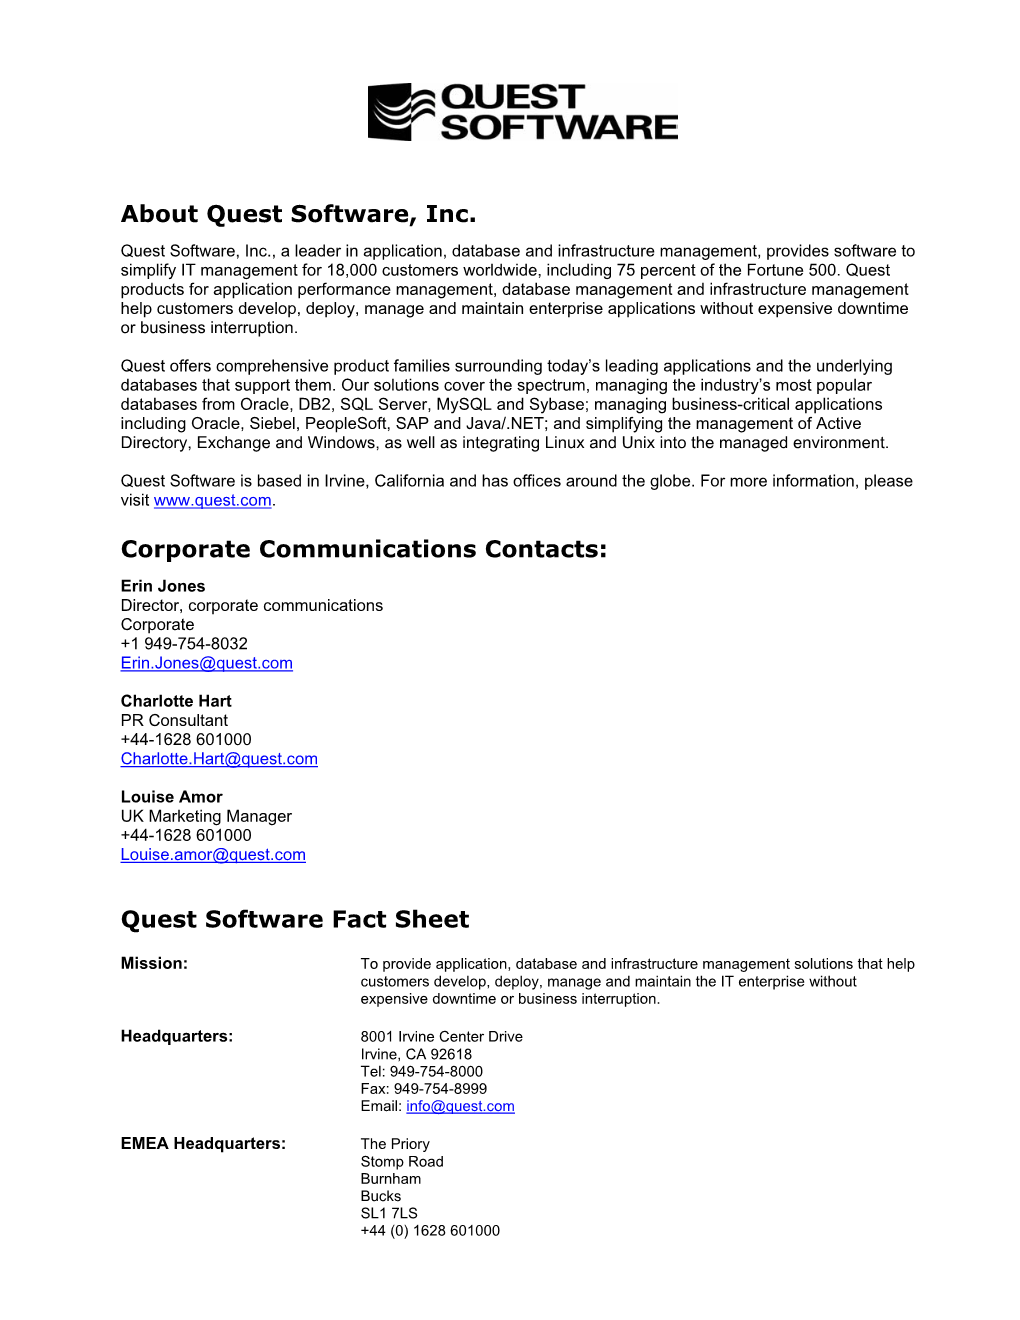 Quest Software Fact Sheet